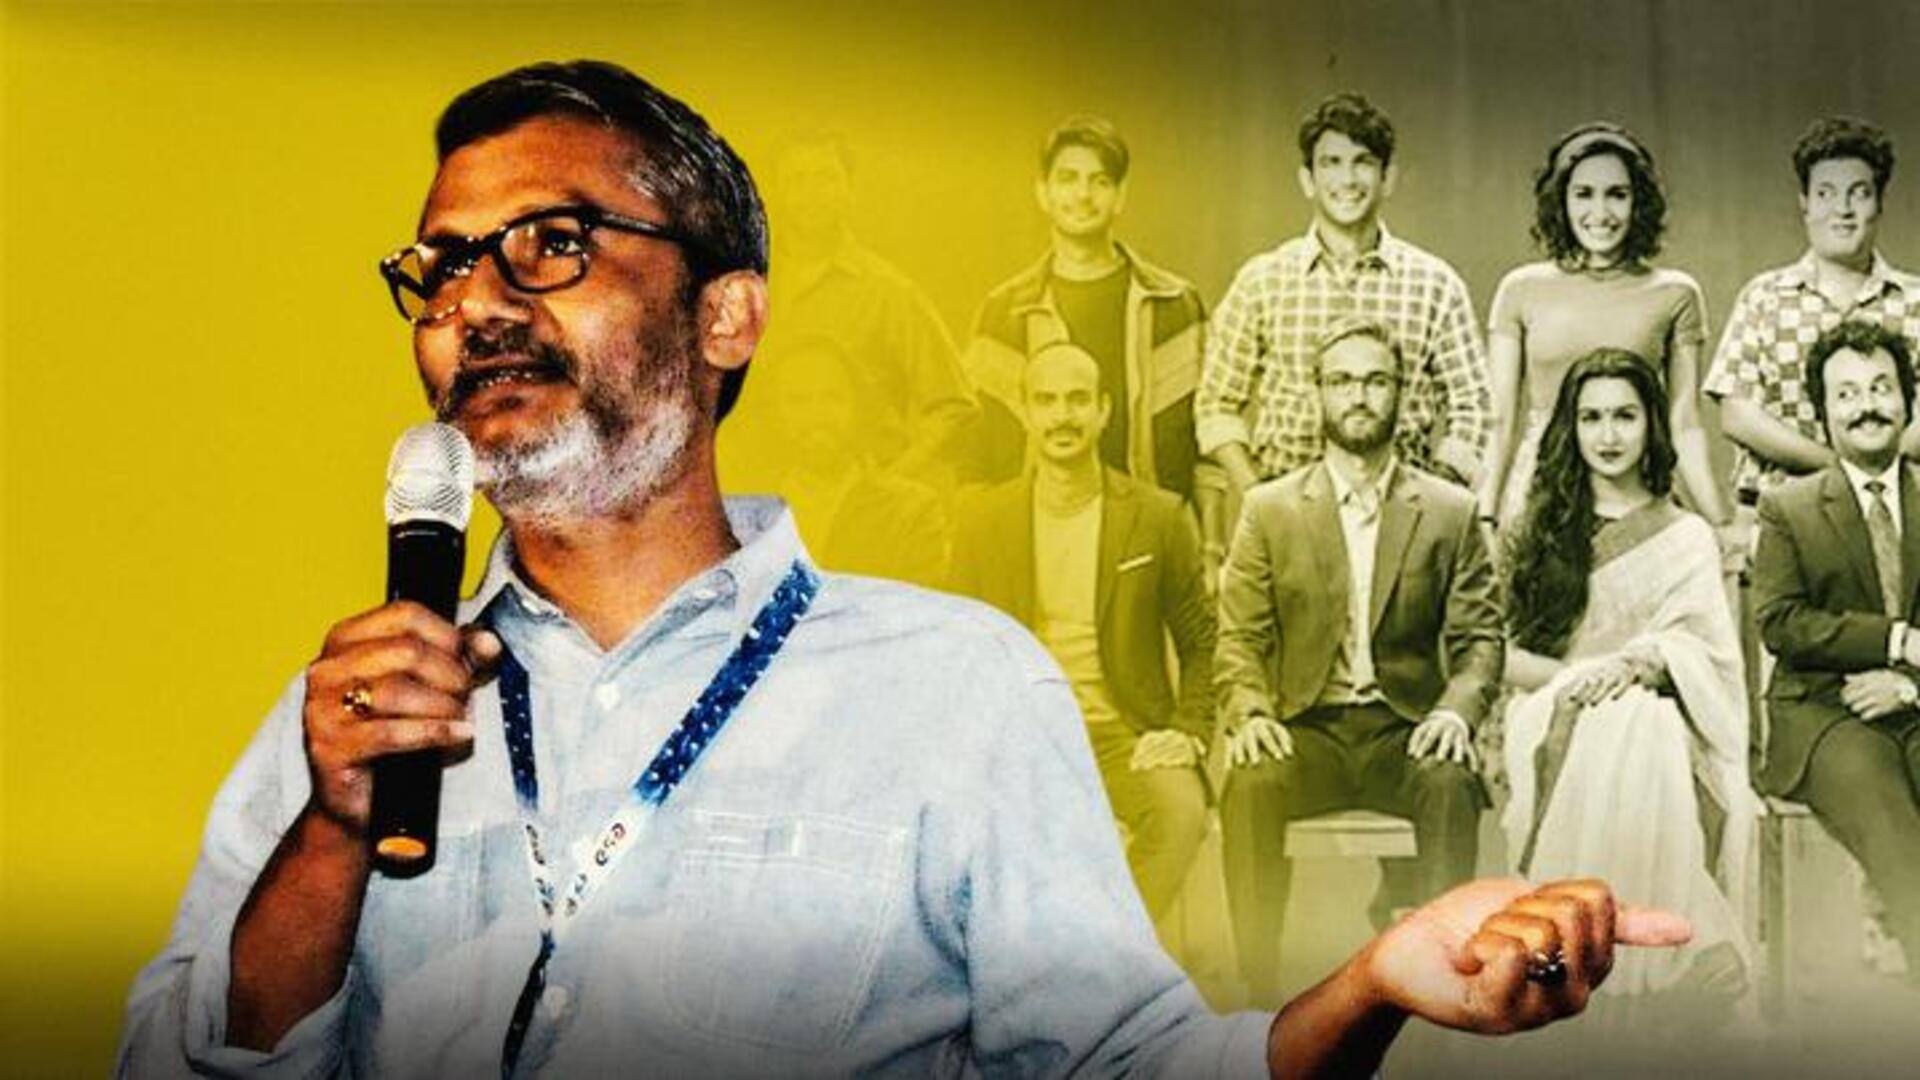 सुशांत की फिल्म 'छिछोरे' का सीक्वल जल्द आएगा, दूसरी किस्त लाने को तैयार निर्देशक नितेश तिवारी